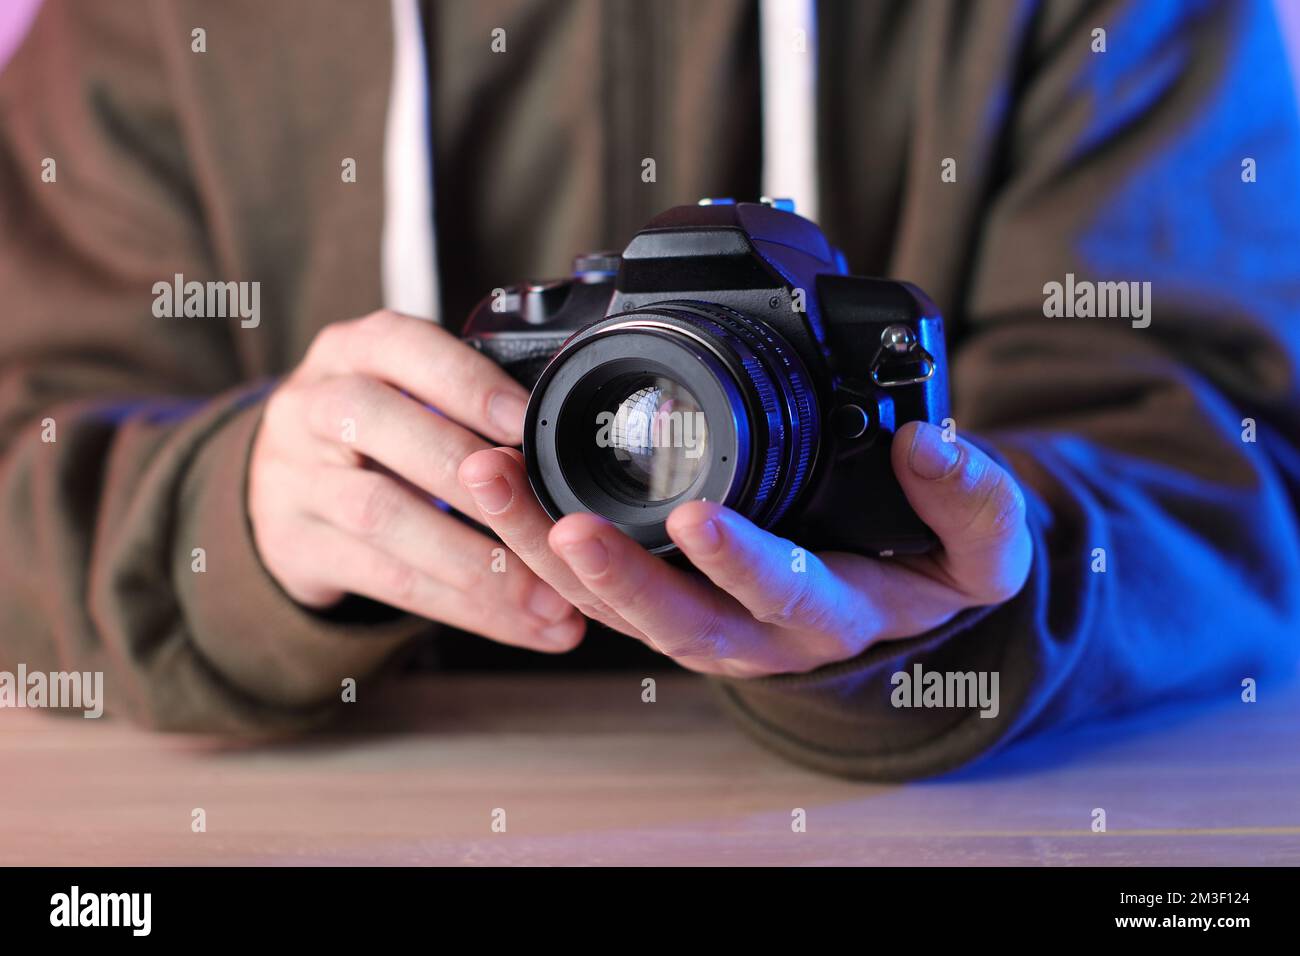 appareil photo numérique avec ancien objectif manuel dans les mains sur la table et sur fond coloré Banque D'Images